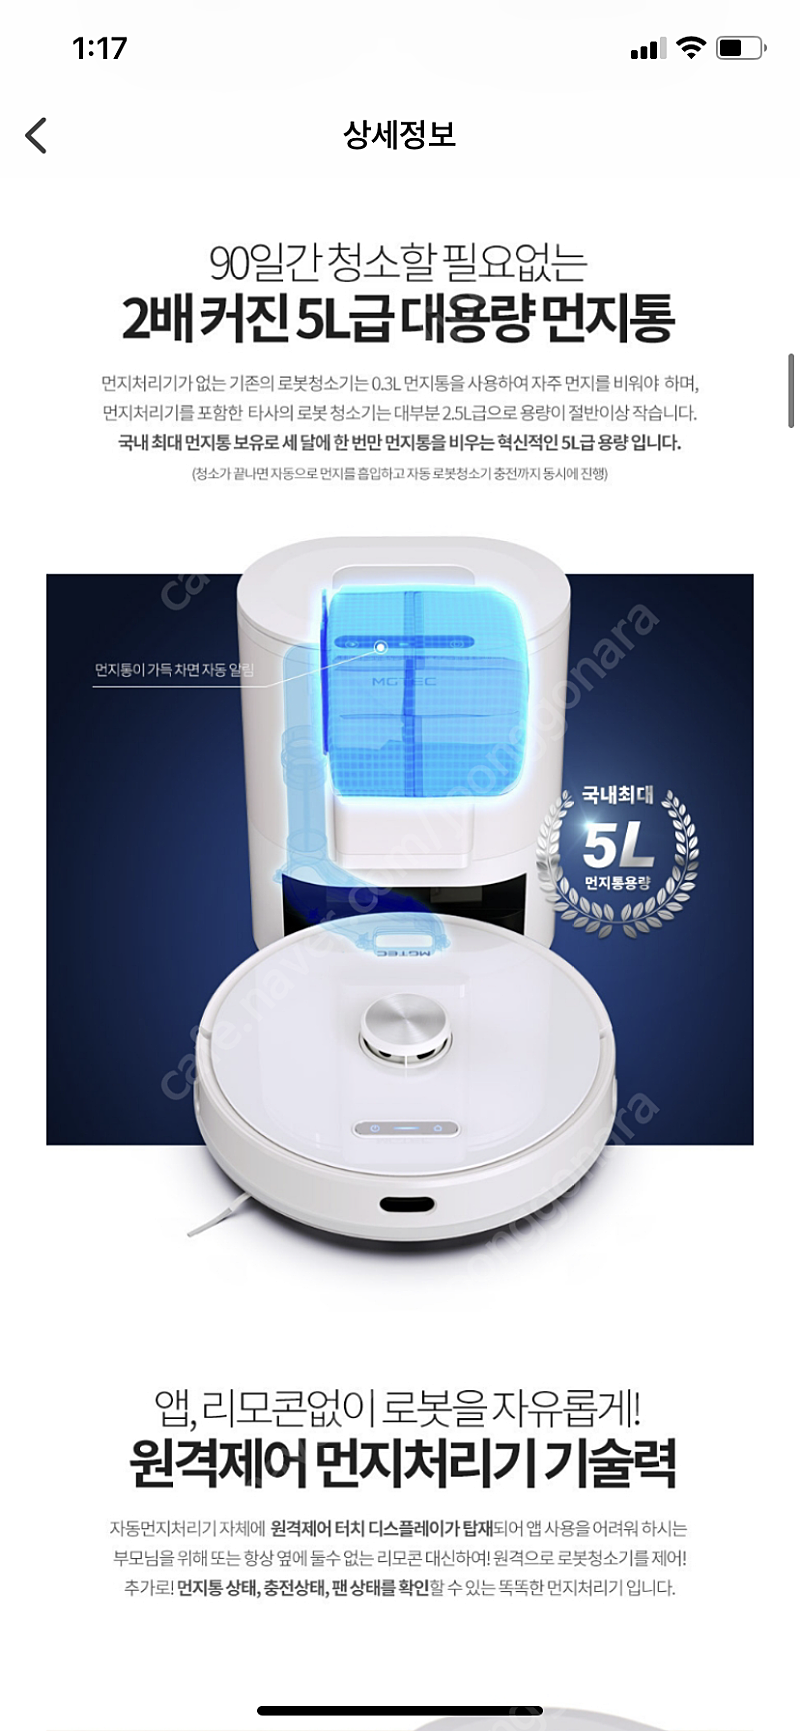 엠지텍 트윈보스 로봇청소기 S9 PRO MASTER 가격내림 새상품